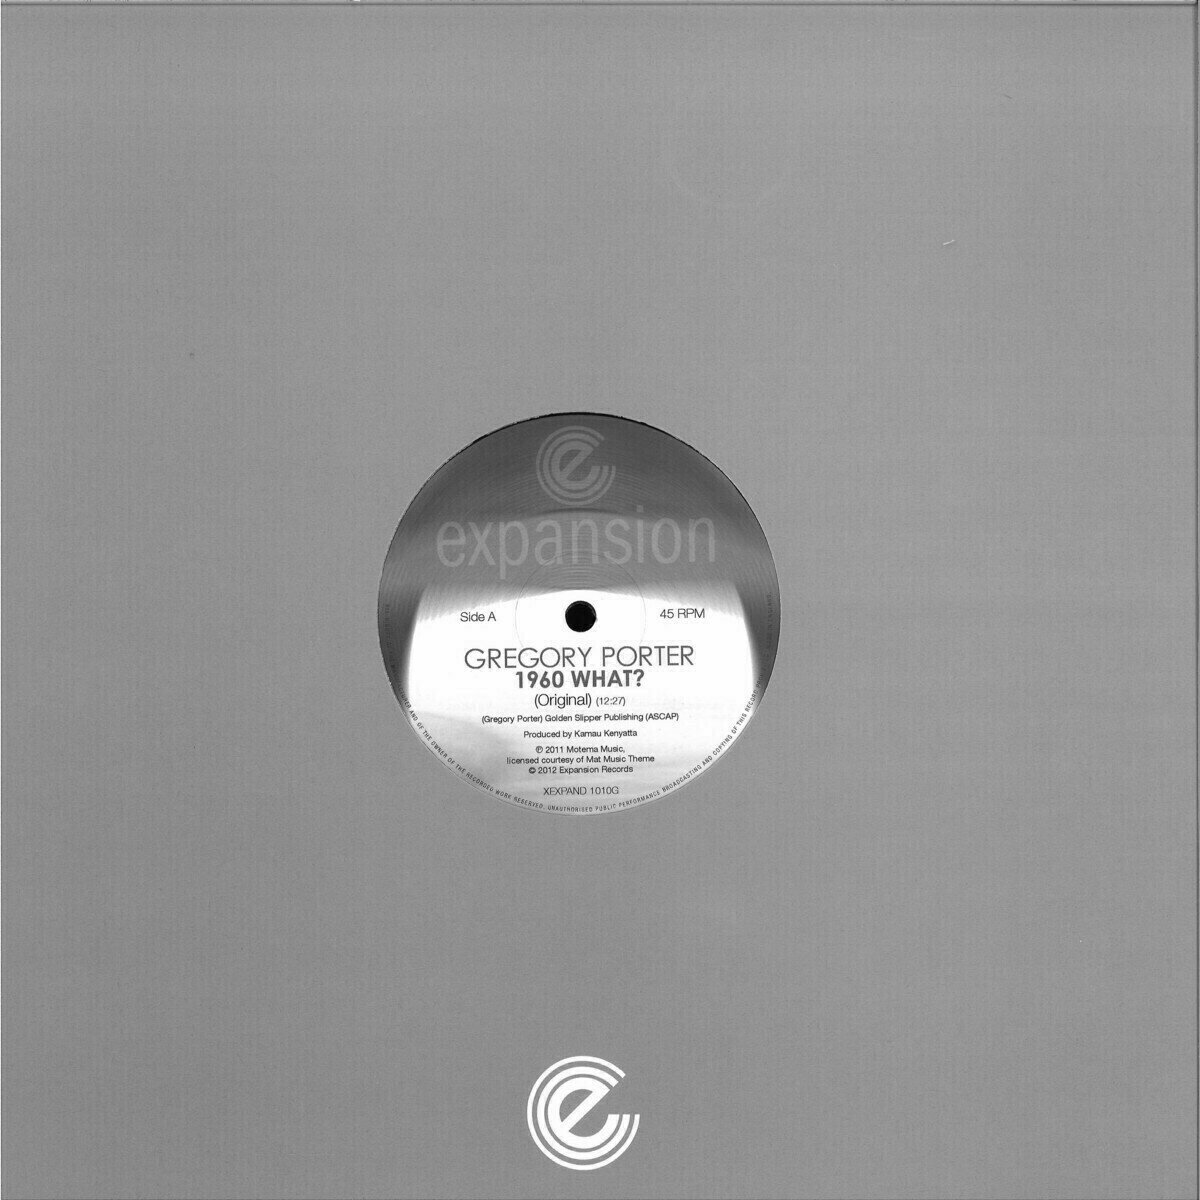 LP deska Gregory Porter - 1960 What? (Original Mix) (12" Vinyl)